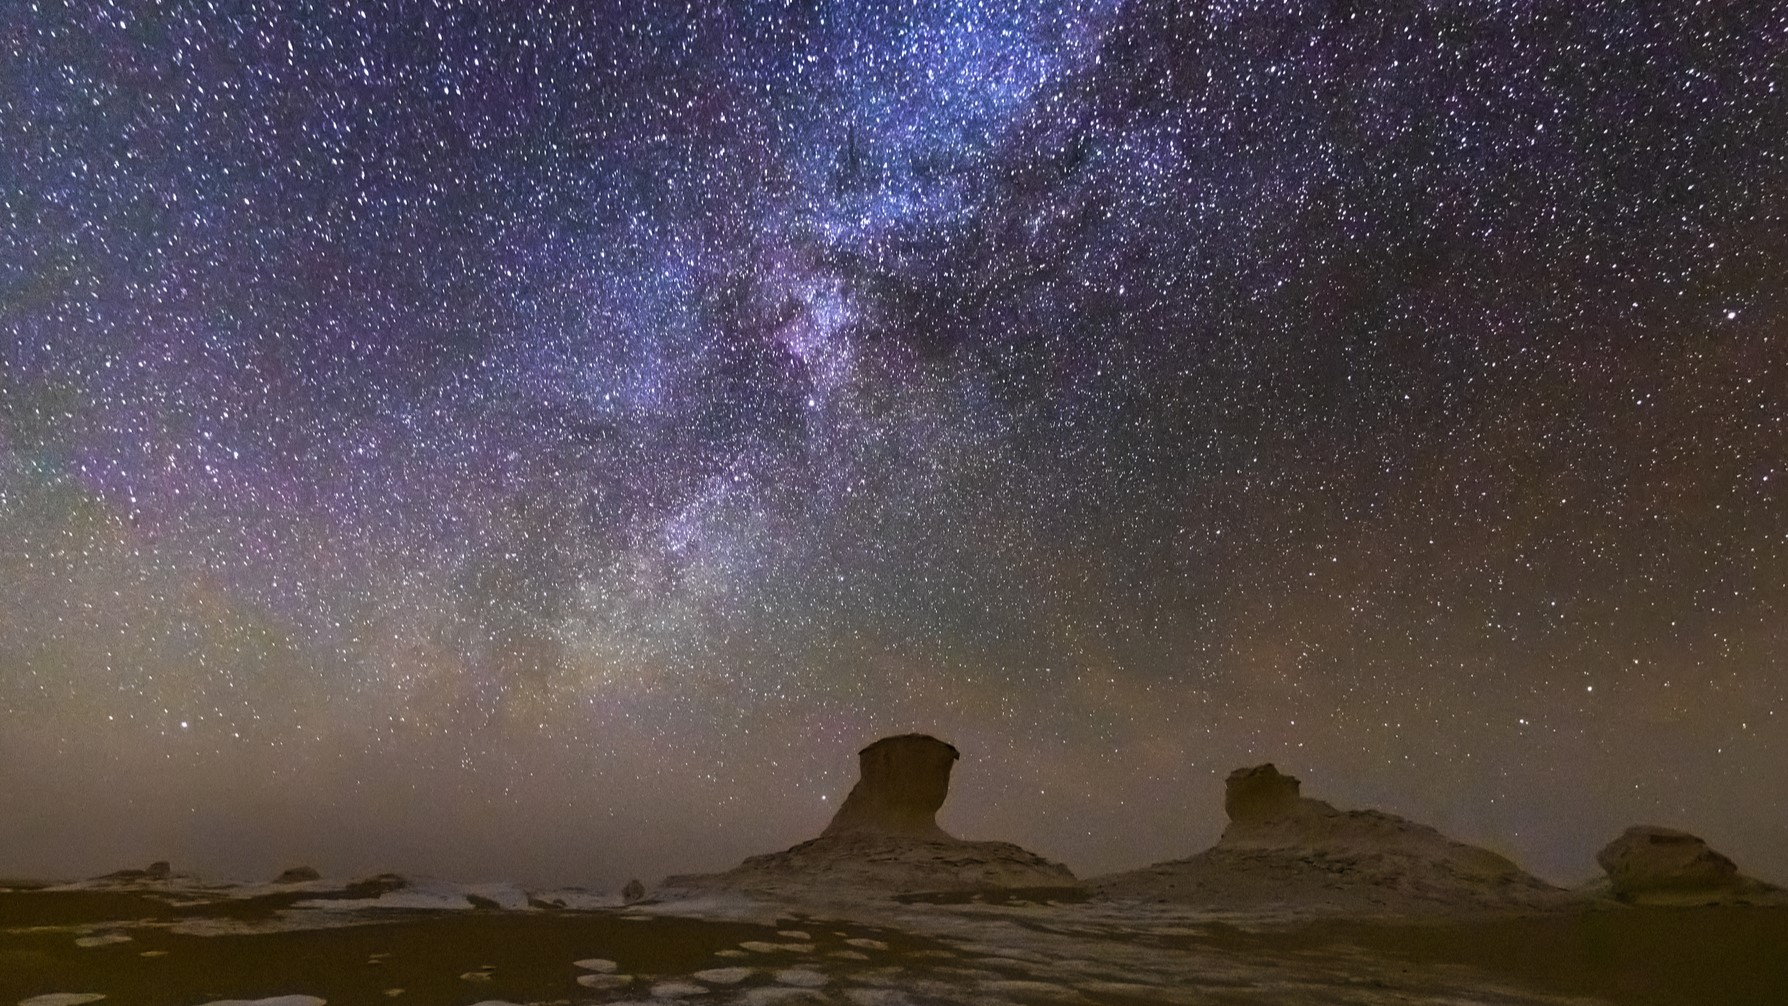 Beautiful starry night sky over a desert landscape in the White Desert. Egypt